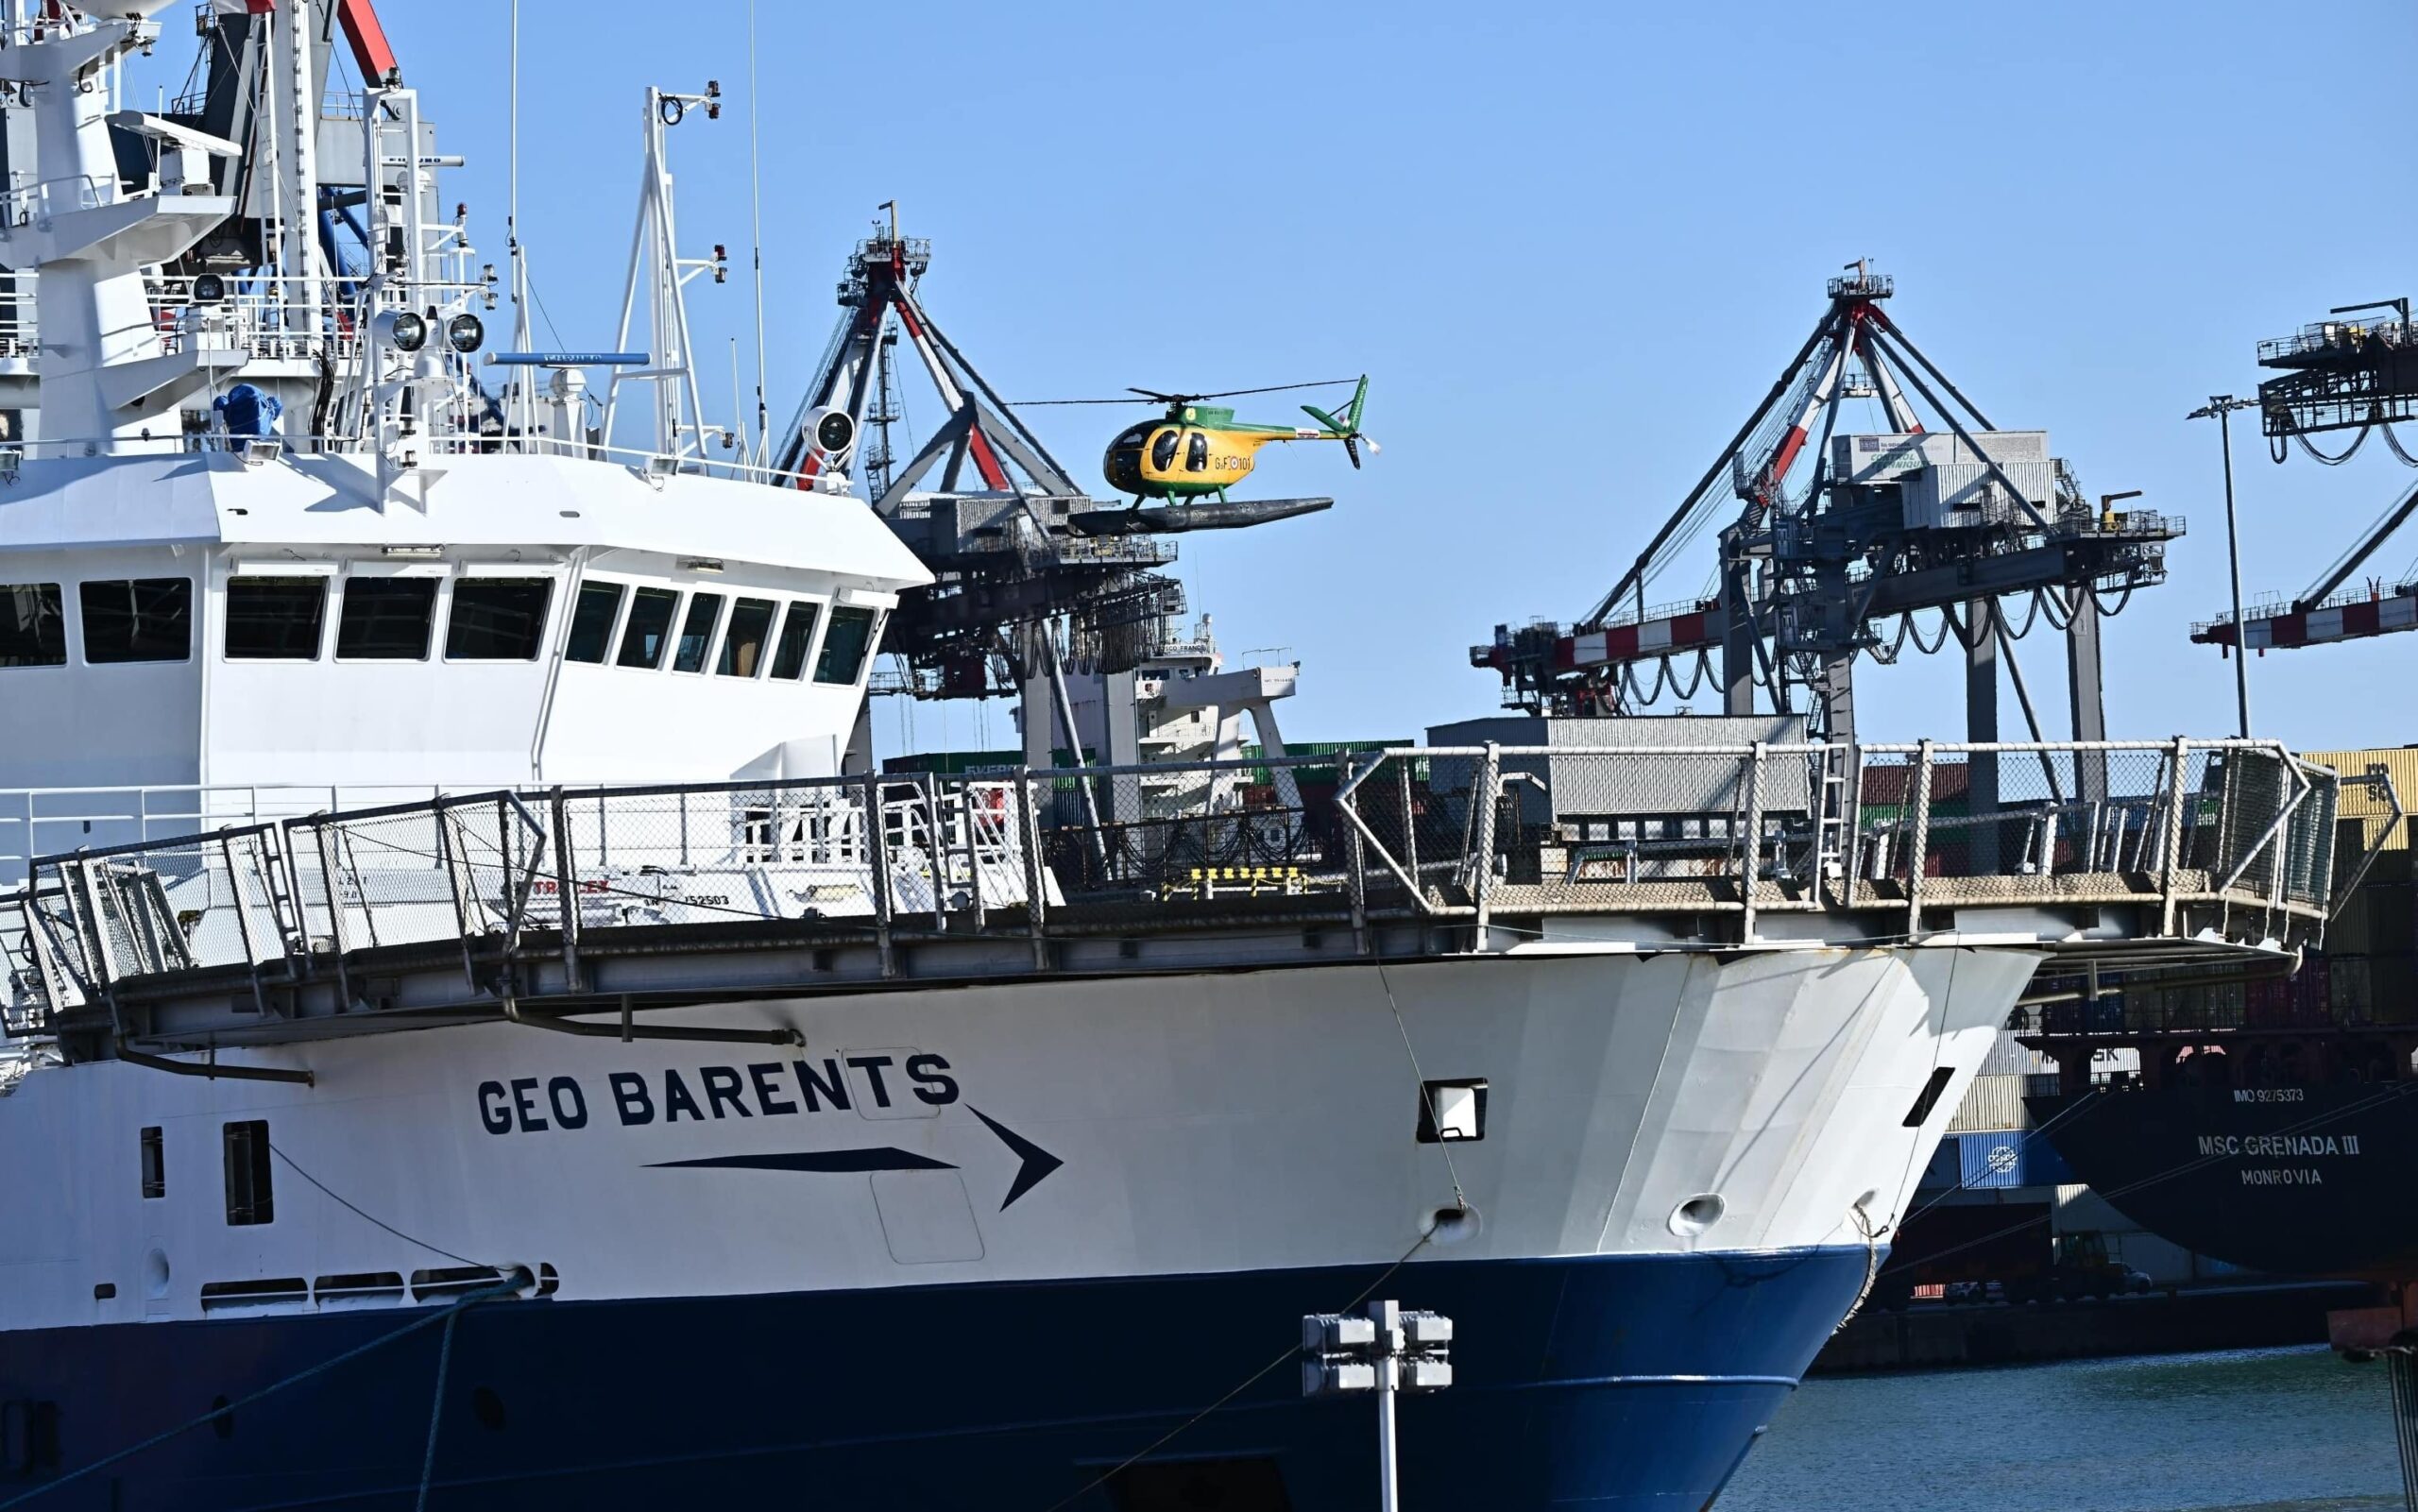 La capitaneria di porto si rifiuta di portare a terra il corpo di un 17enne a bordo della Geo Barents, Avs: "Disumani"